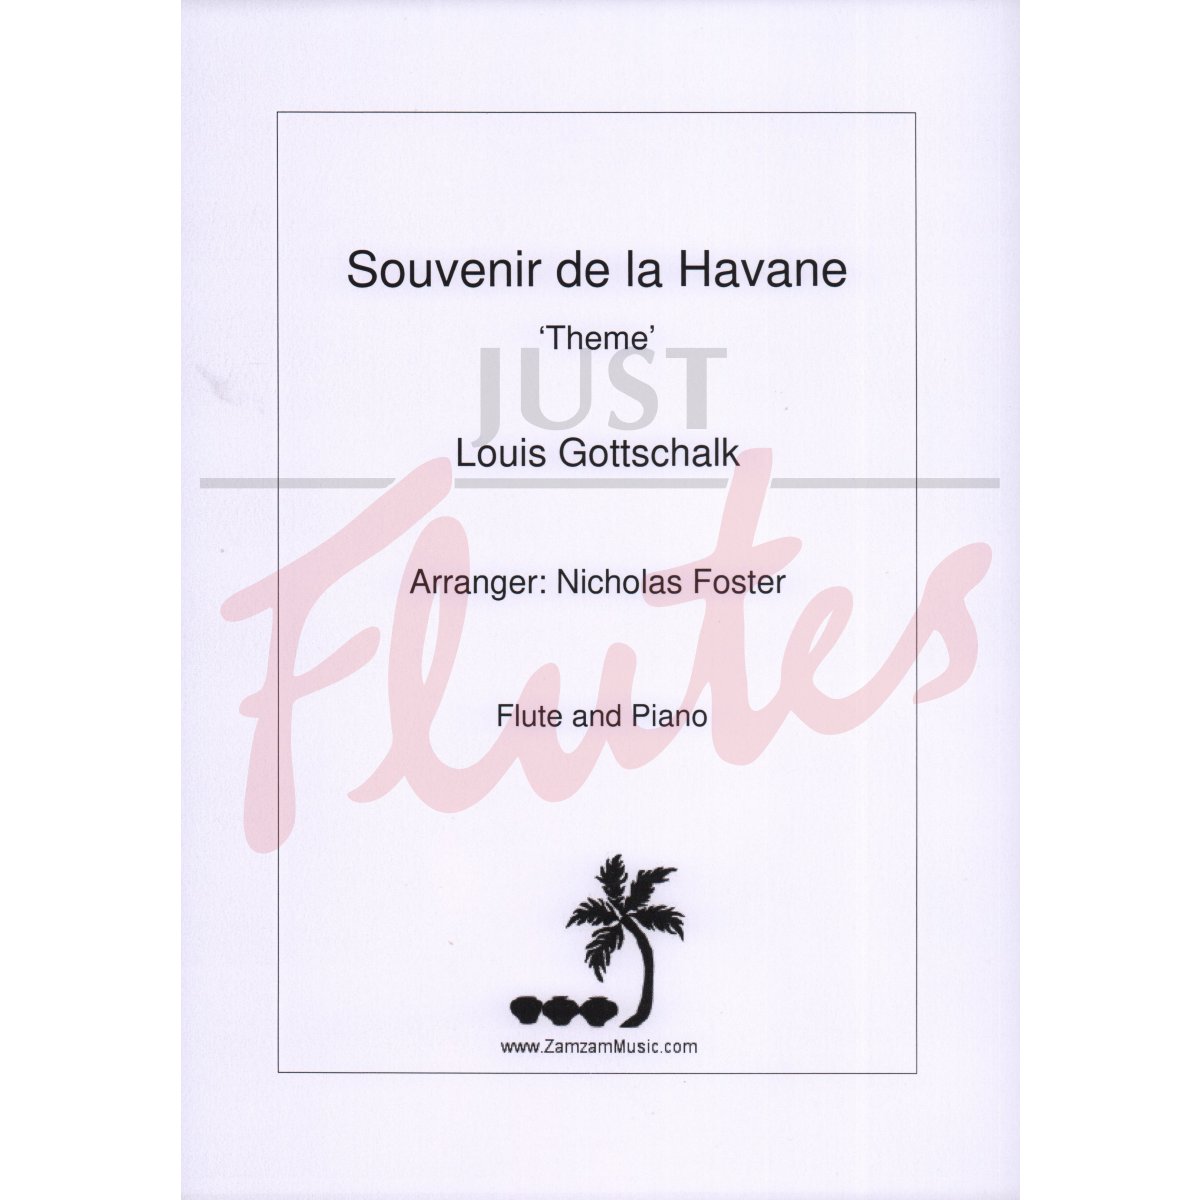 Souvenir de la Havane 'Theme' for Flute and Piano